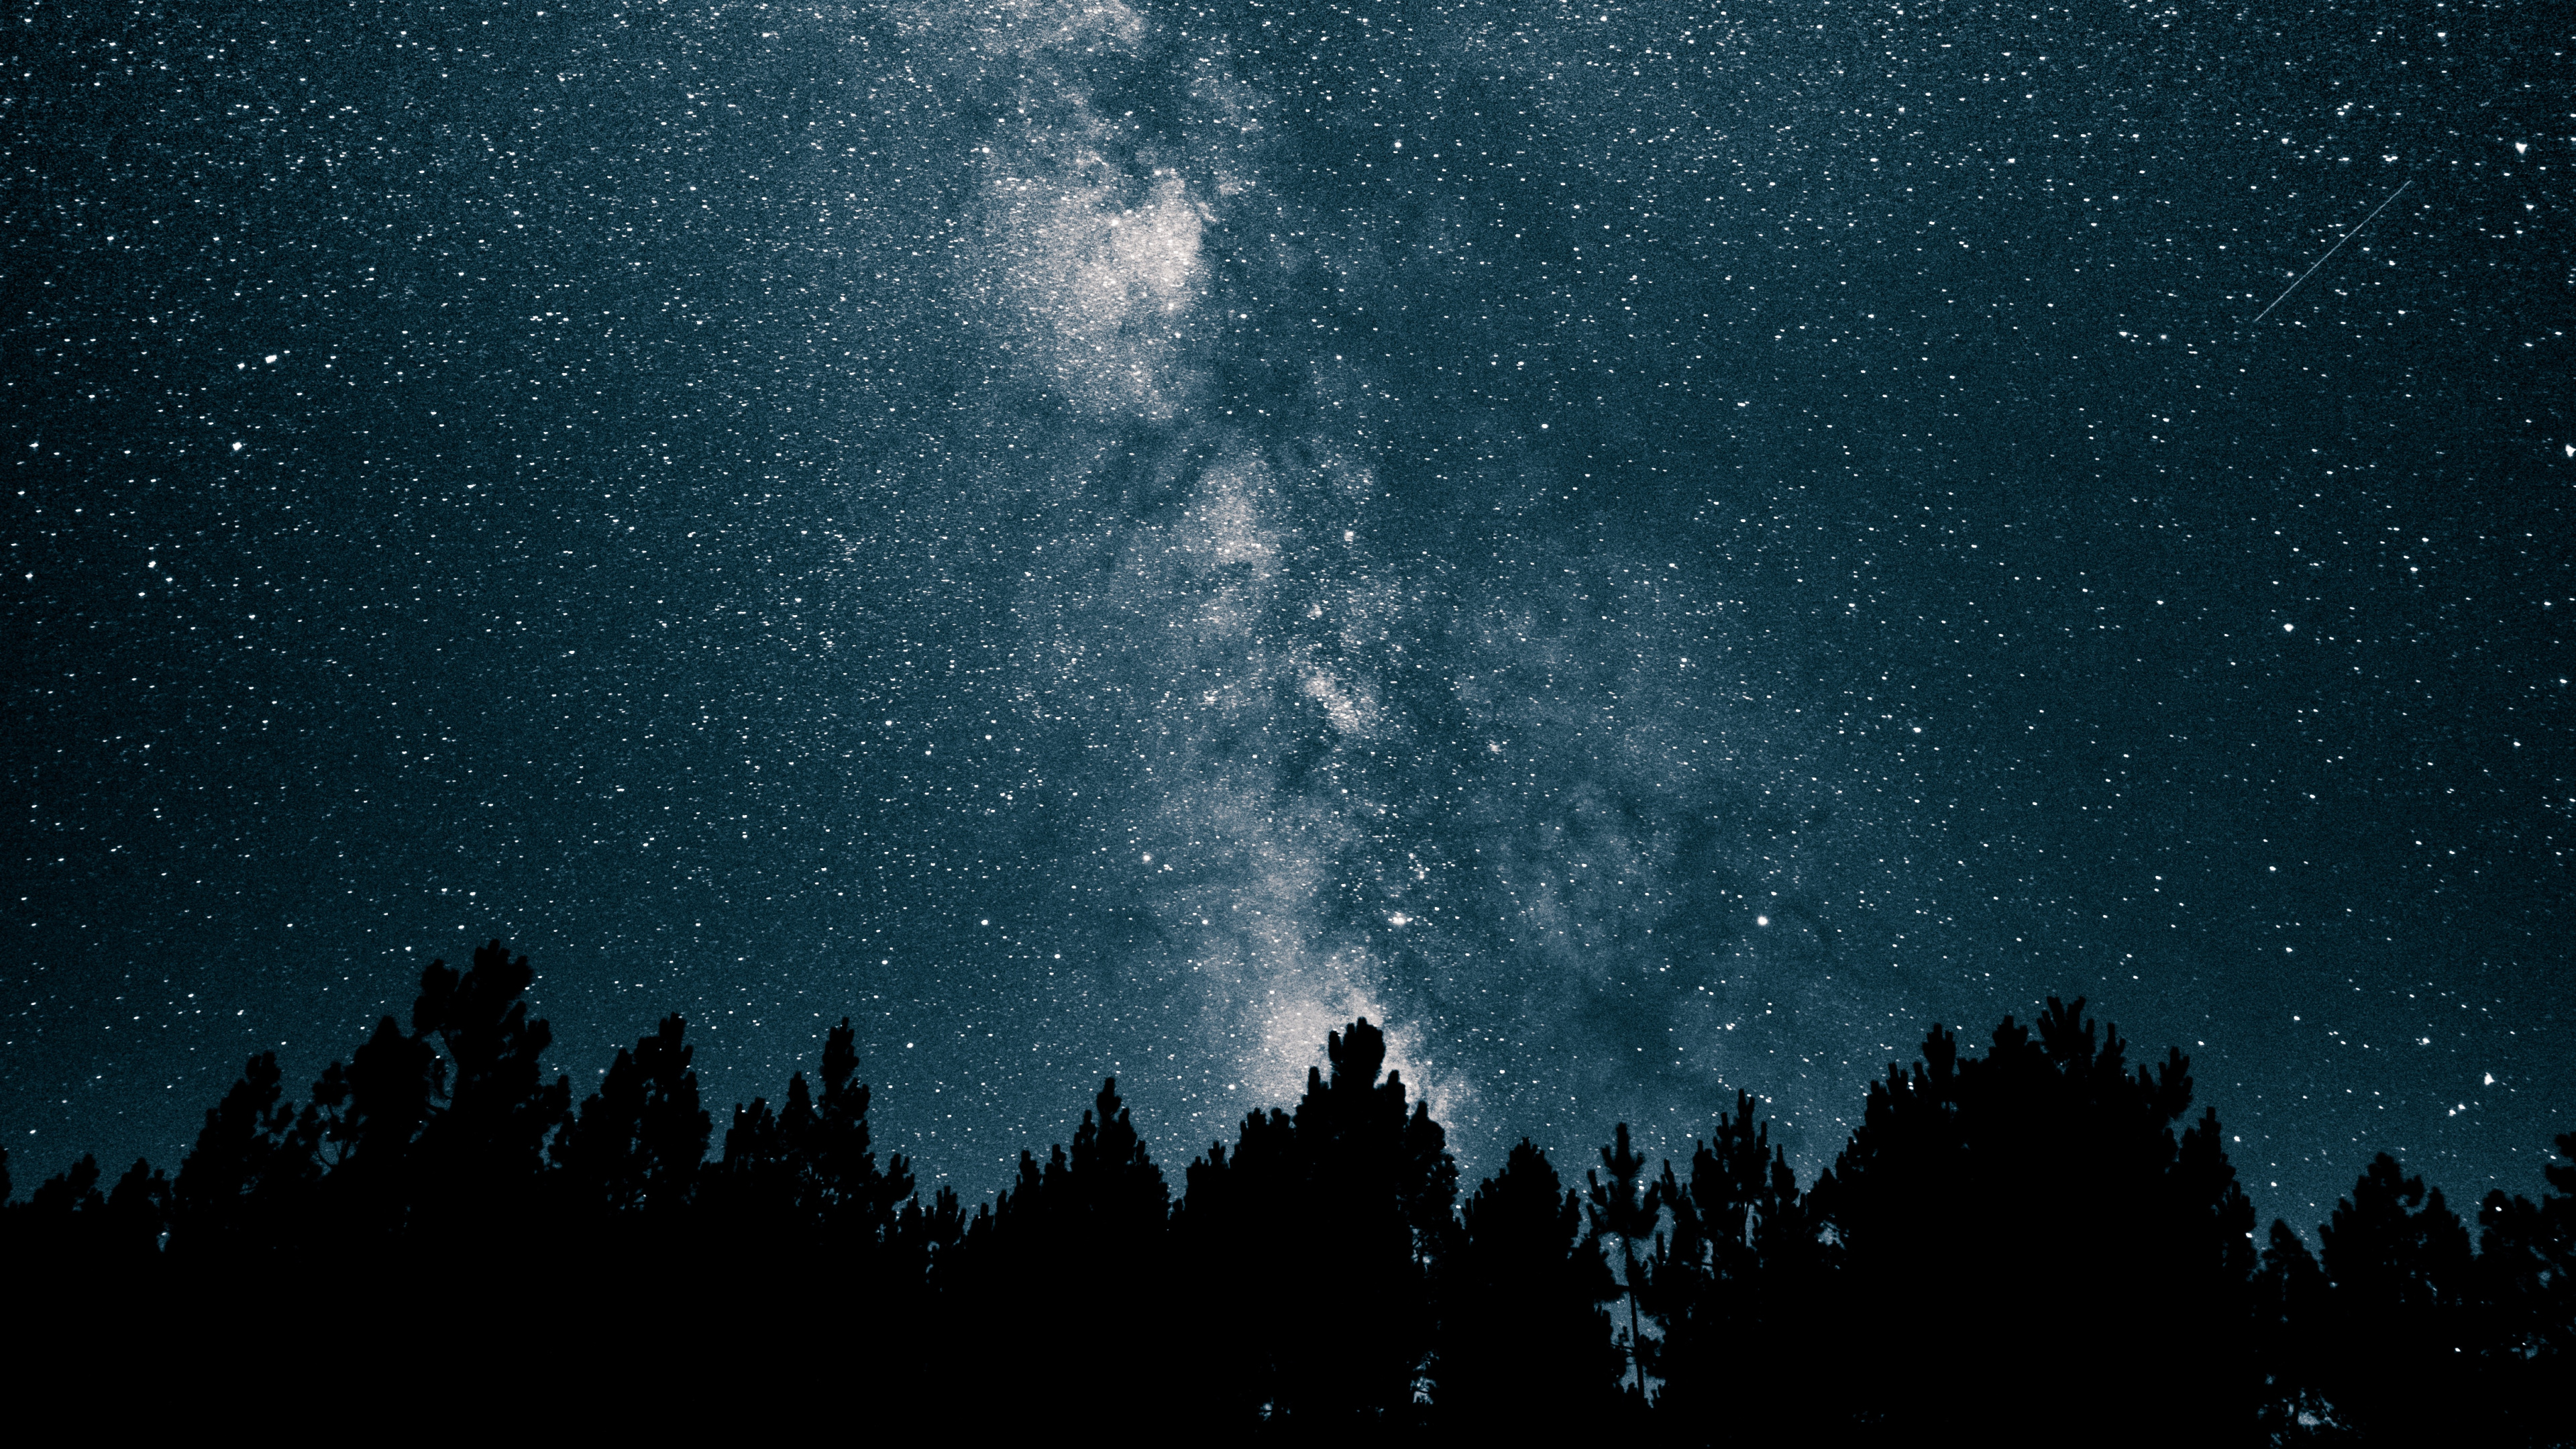 银河系, 明星, 夜晚的天空, 天文学, 天文学对象 壁纸 3840x2160 允许